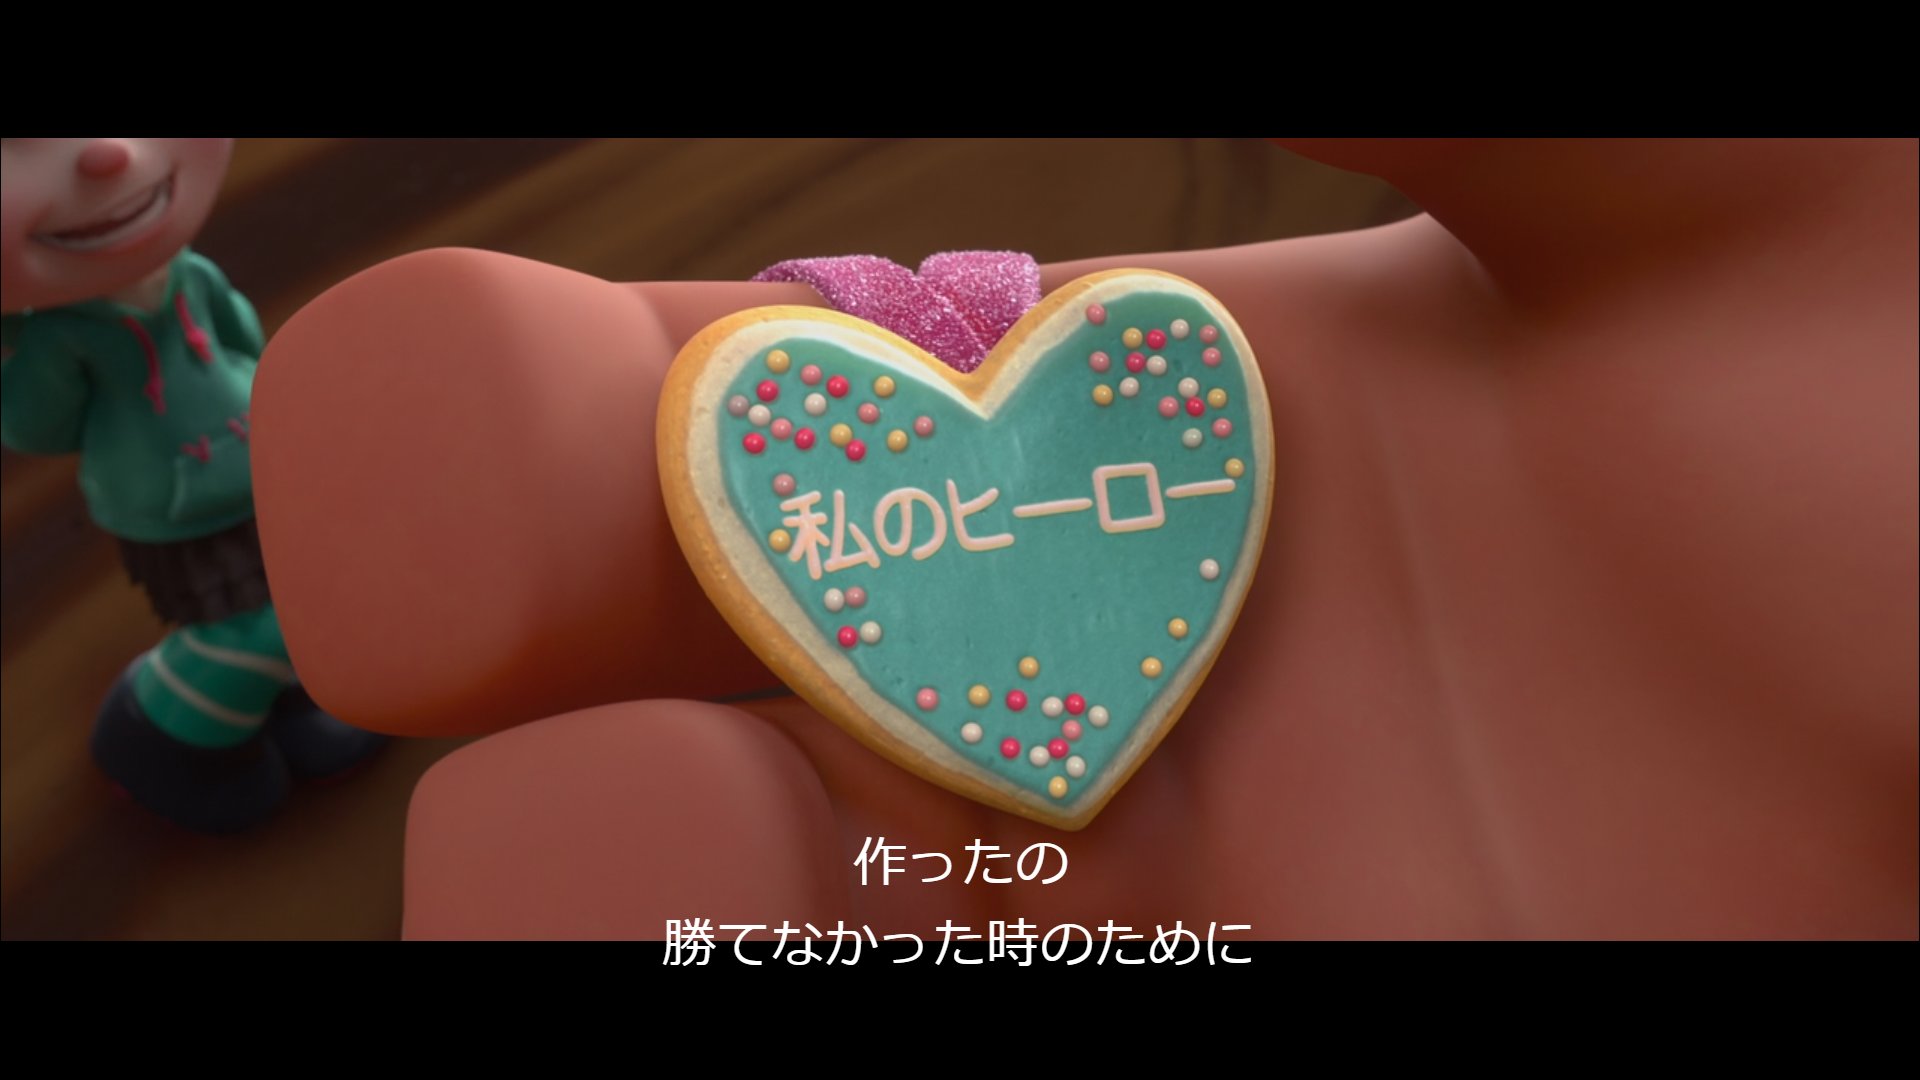 ライカ Euthanasia ディズニー映画でよく見かける 看板とかの英語を日本語に変換したクソダサフォント がすごい好きなんだけど フォント化けっぽくて一瞬ゾクッとなる